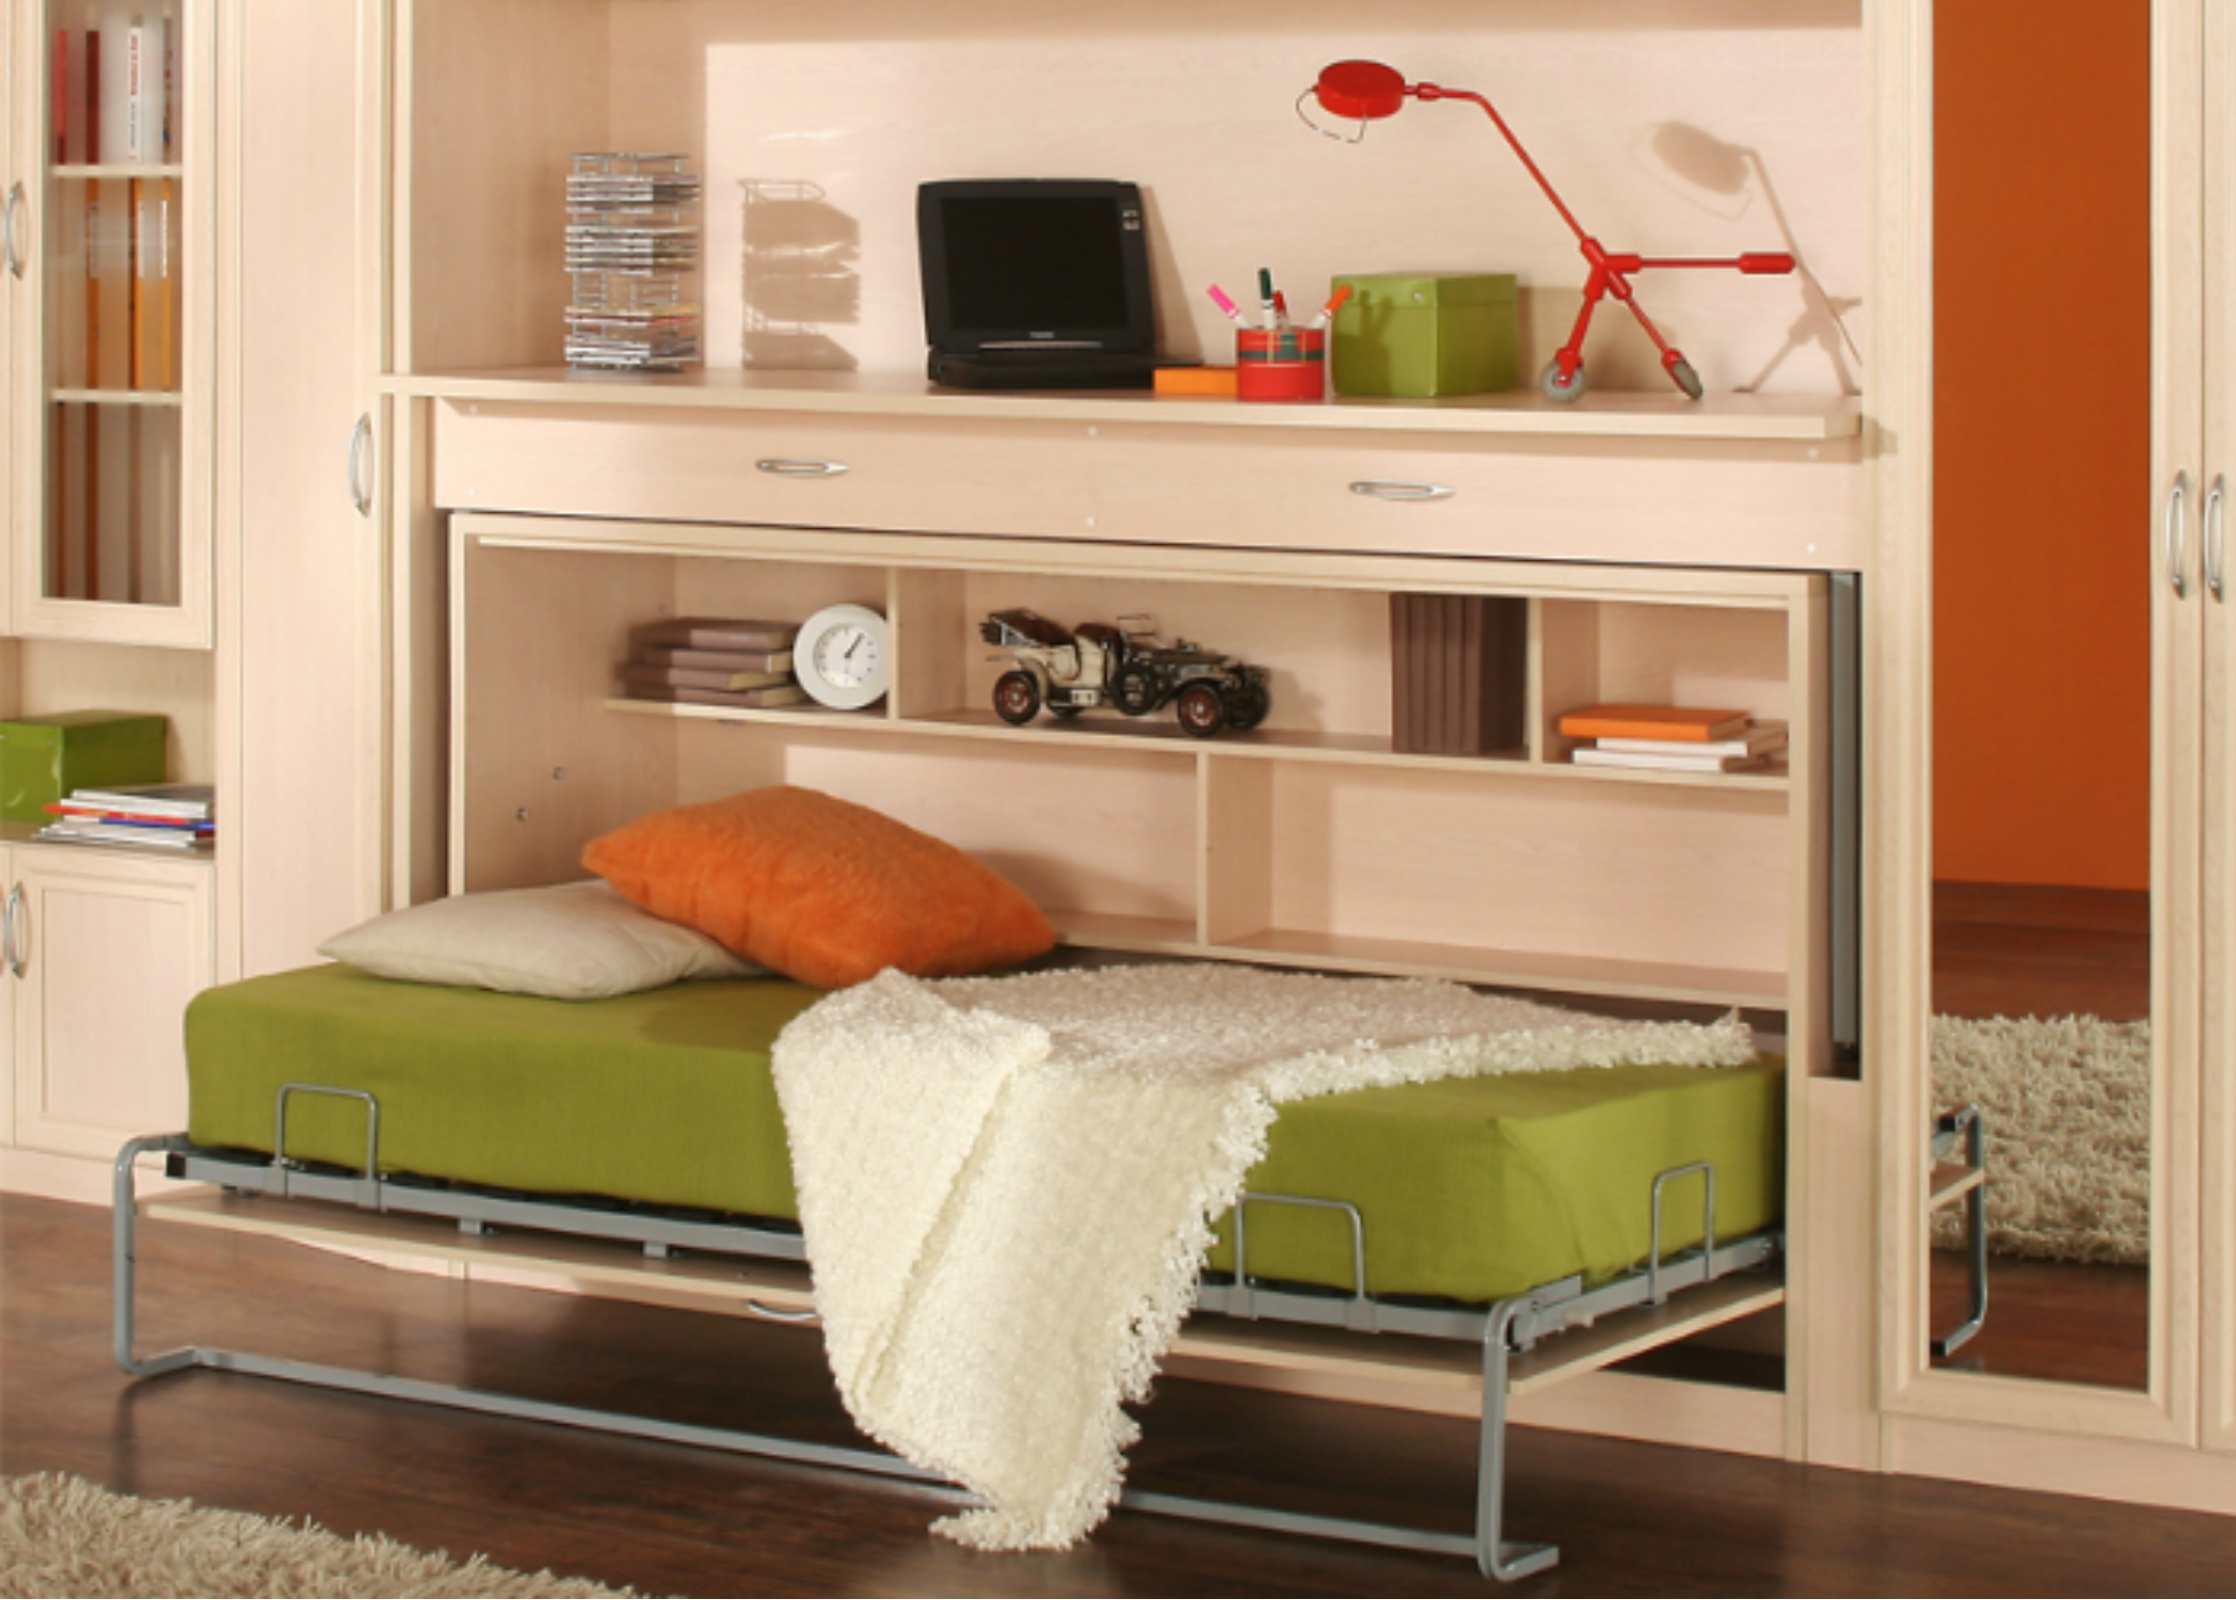 Мебель трансформер для малогабаритной квартиры: кровать, диван, стол, шкаф, комод